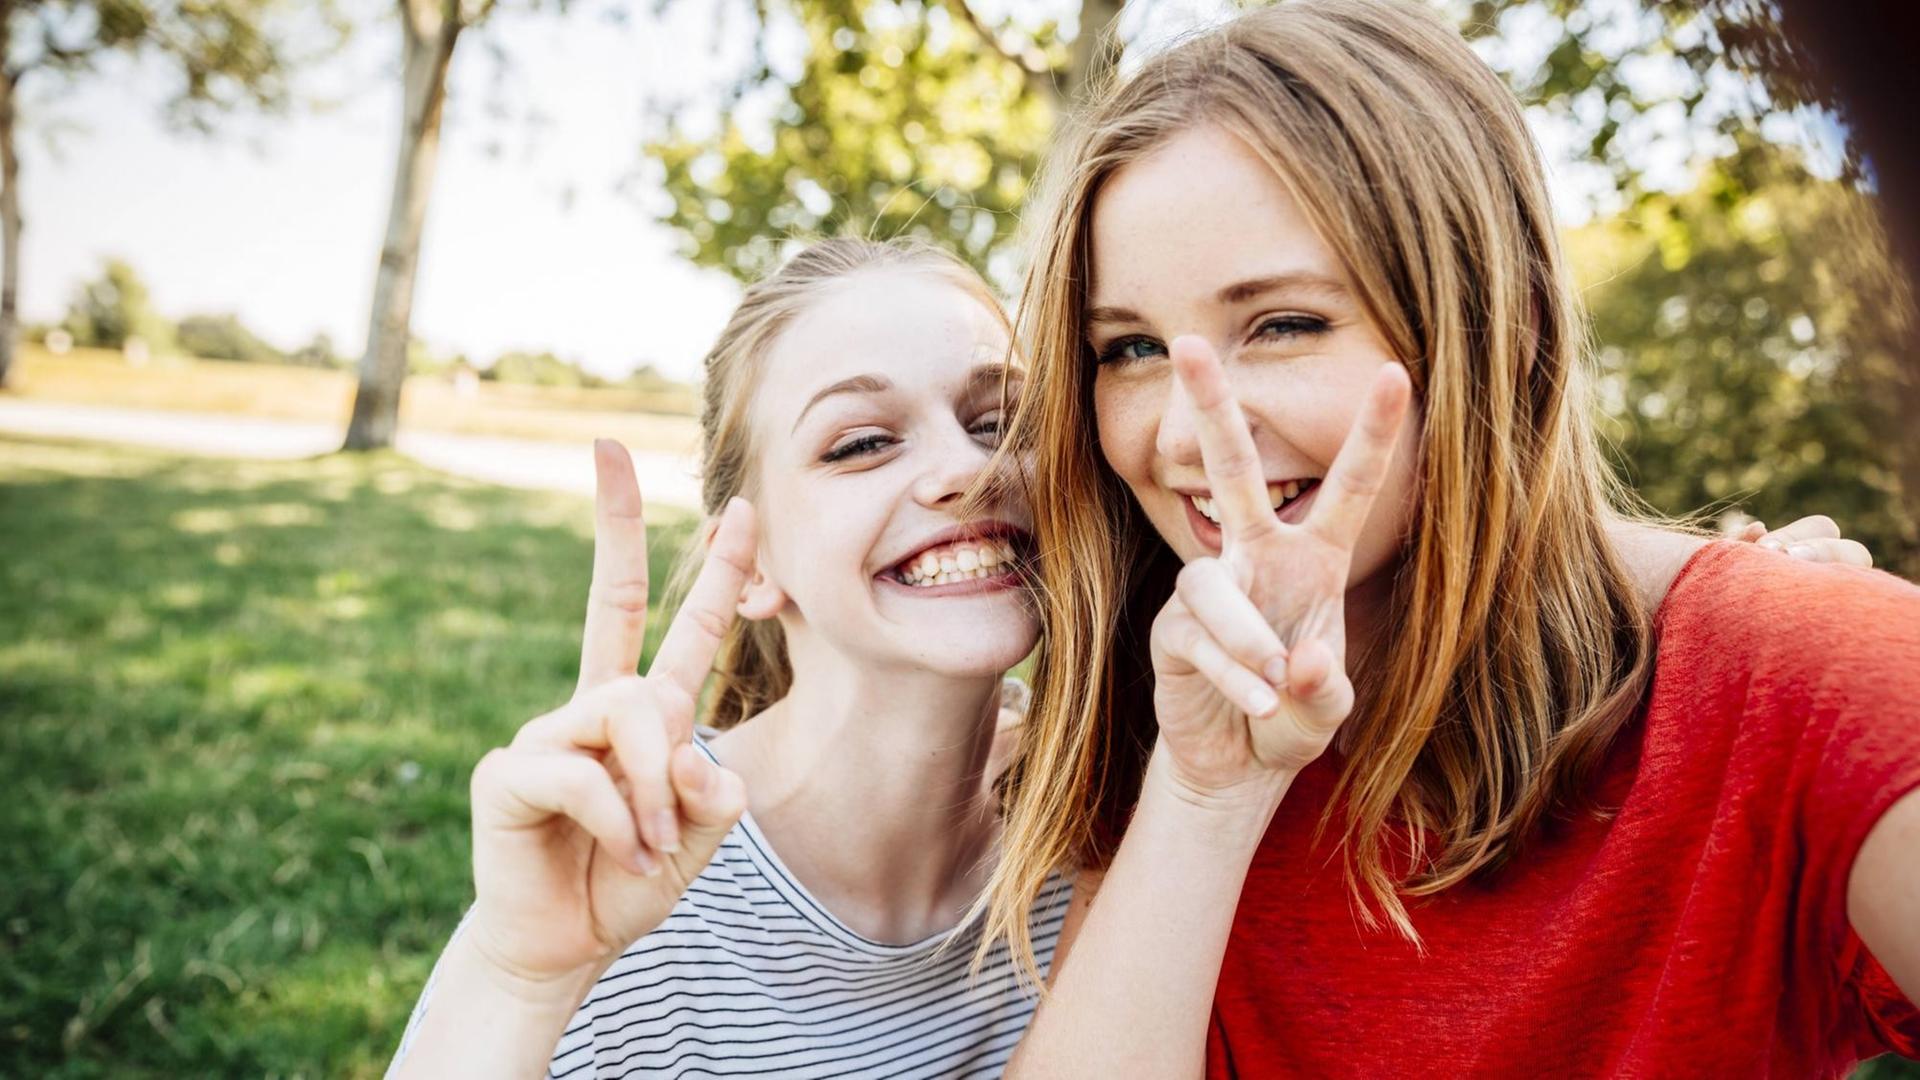 Ein Selfie von zwei Teenagerinnen, die grinsend das Victory-Zeichen machen